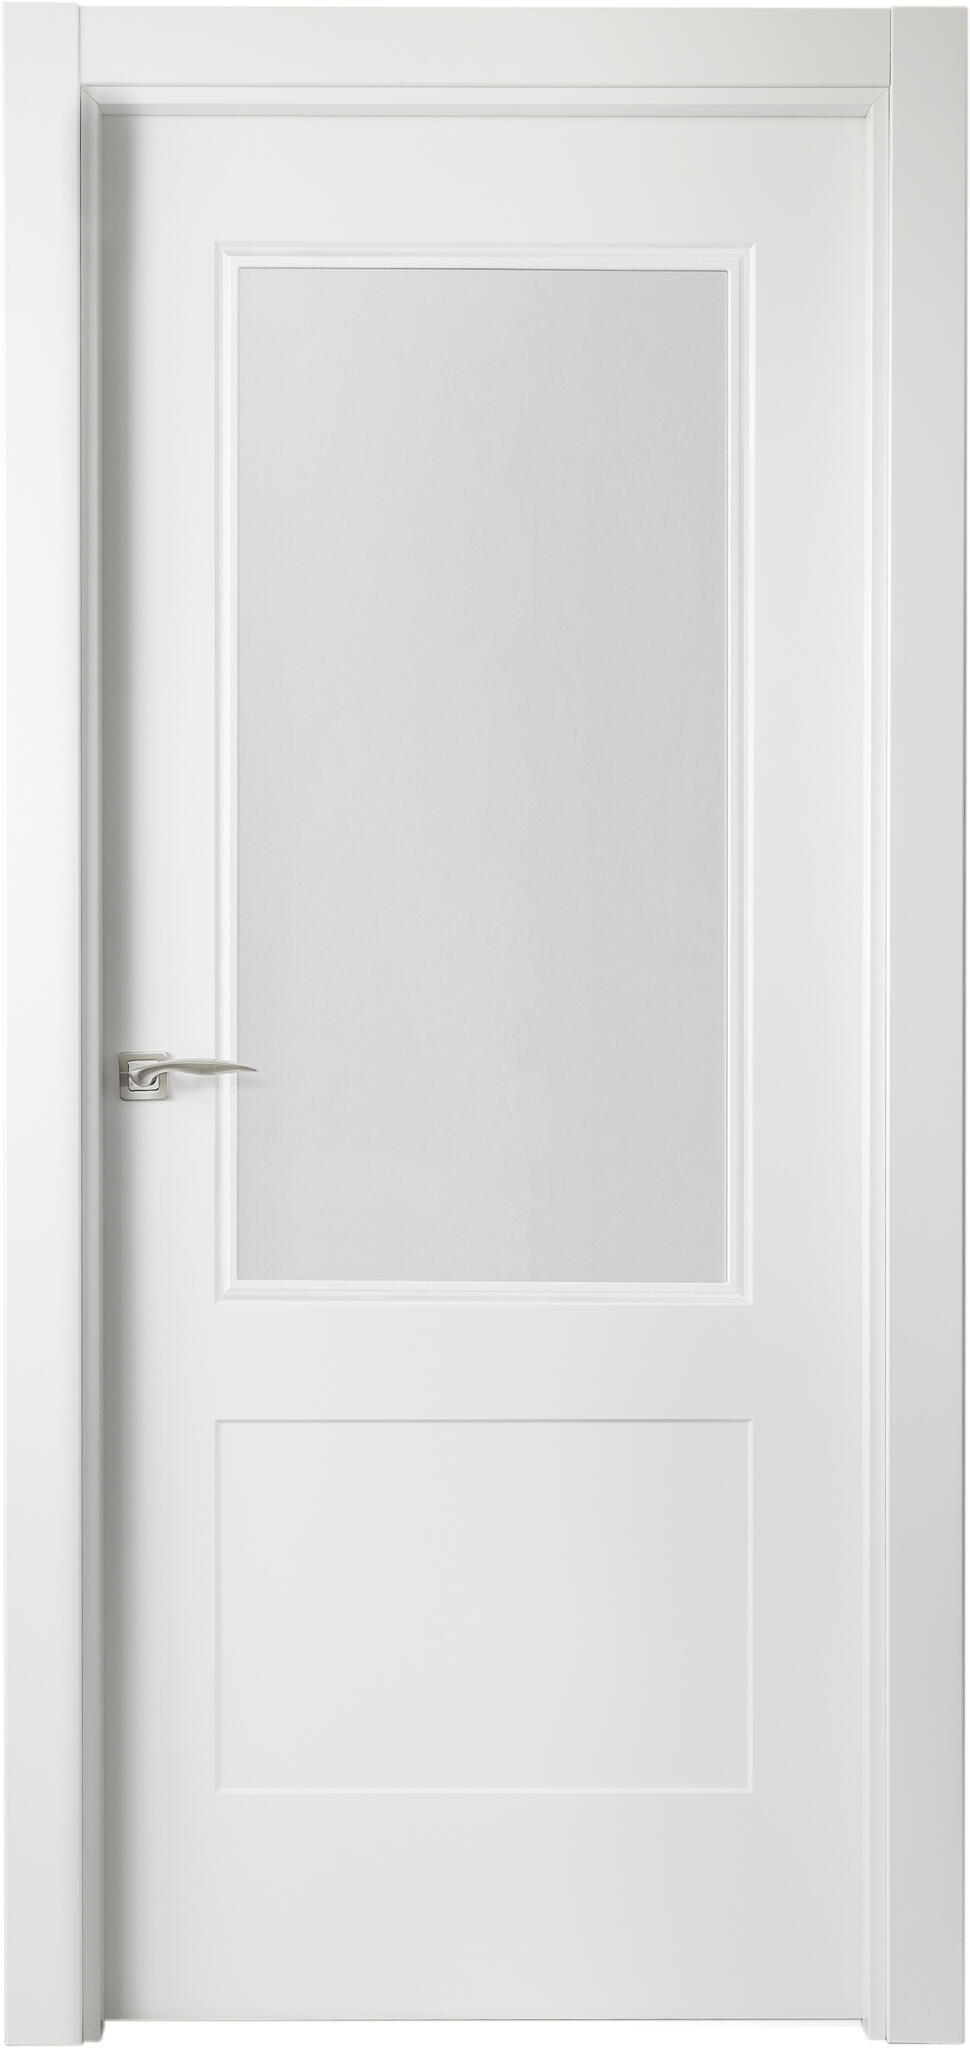 Puerta atlanta plus blanco apertura derecha con cristal de 9x72,5cm